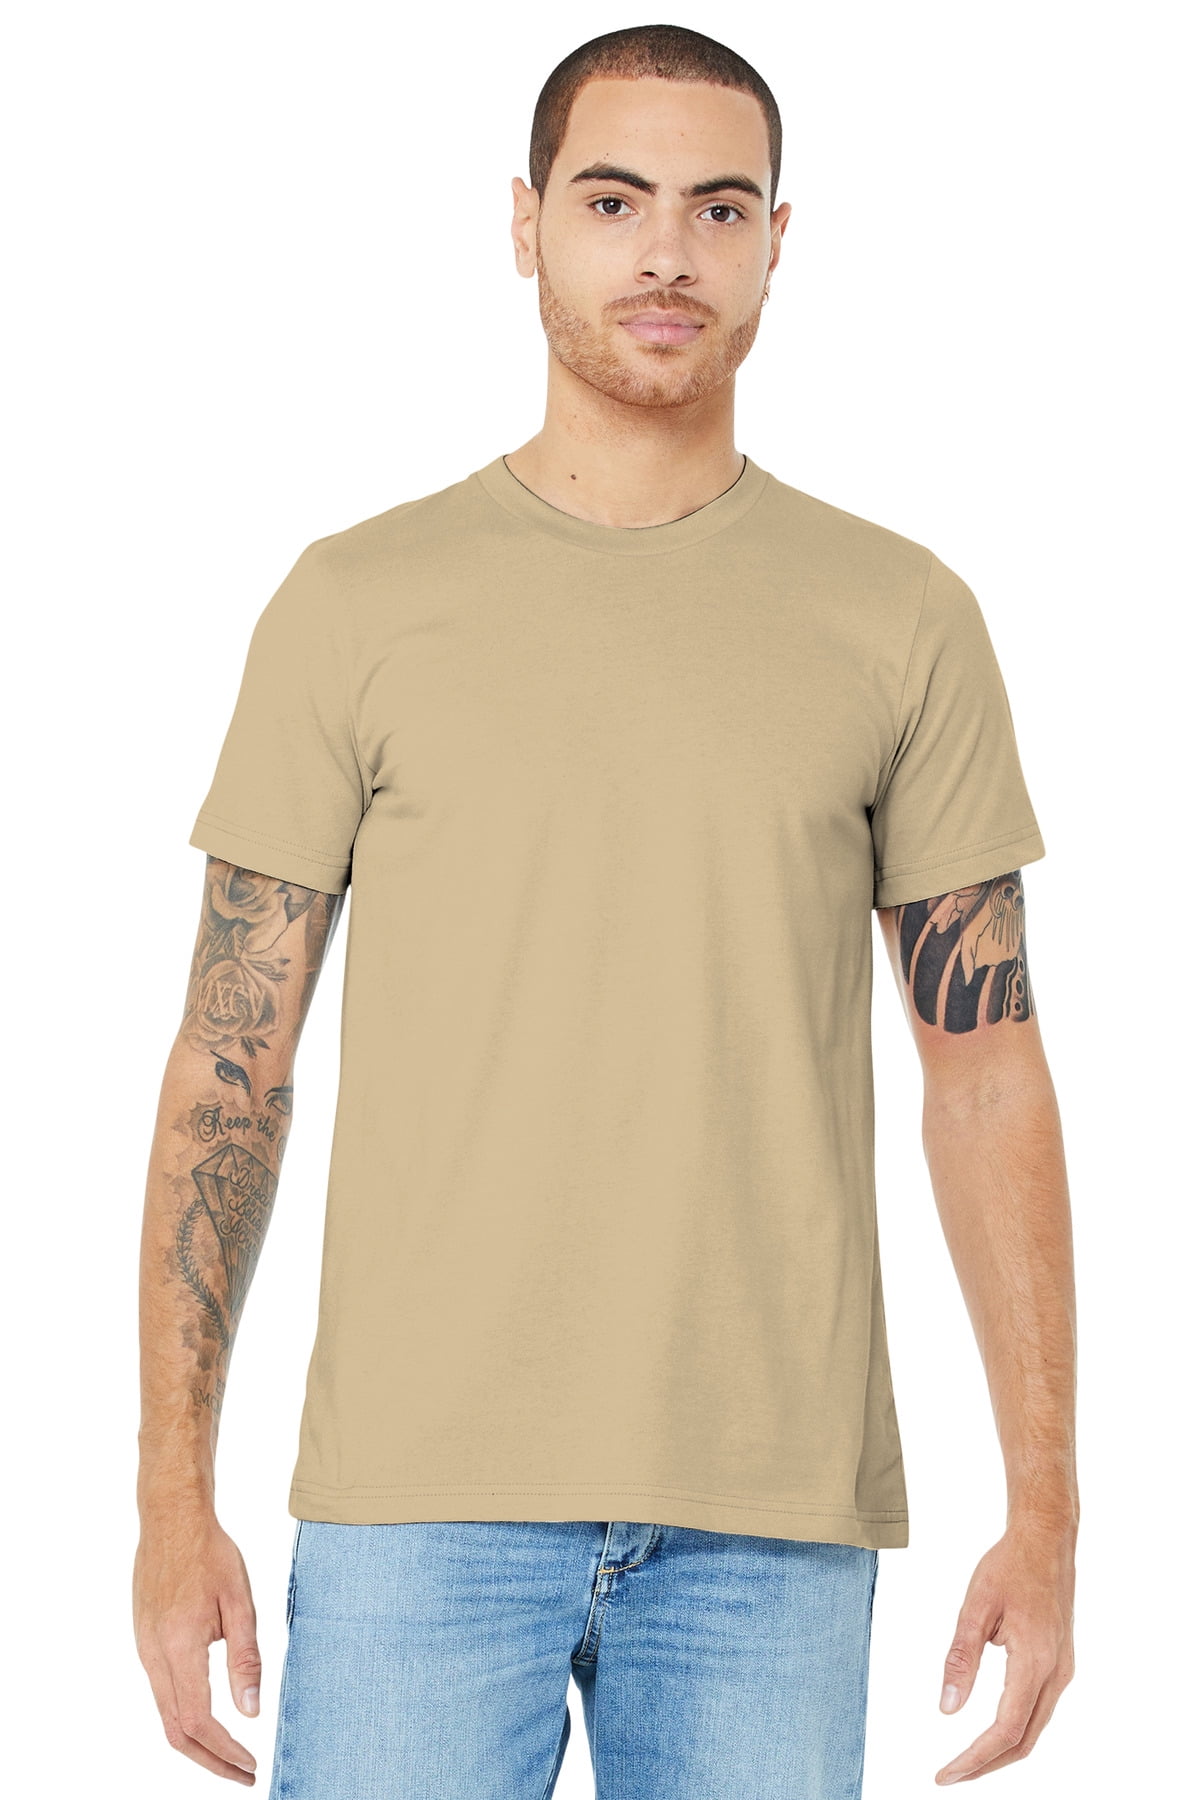 Cotton-Jersey T-Shirt